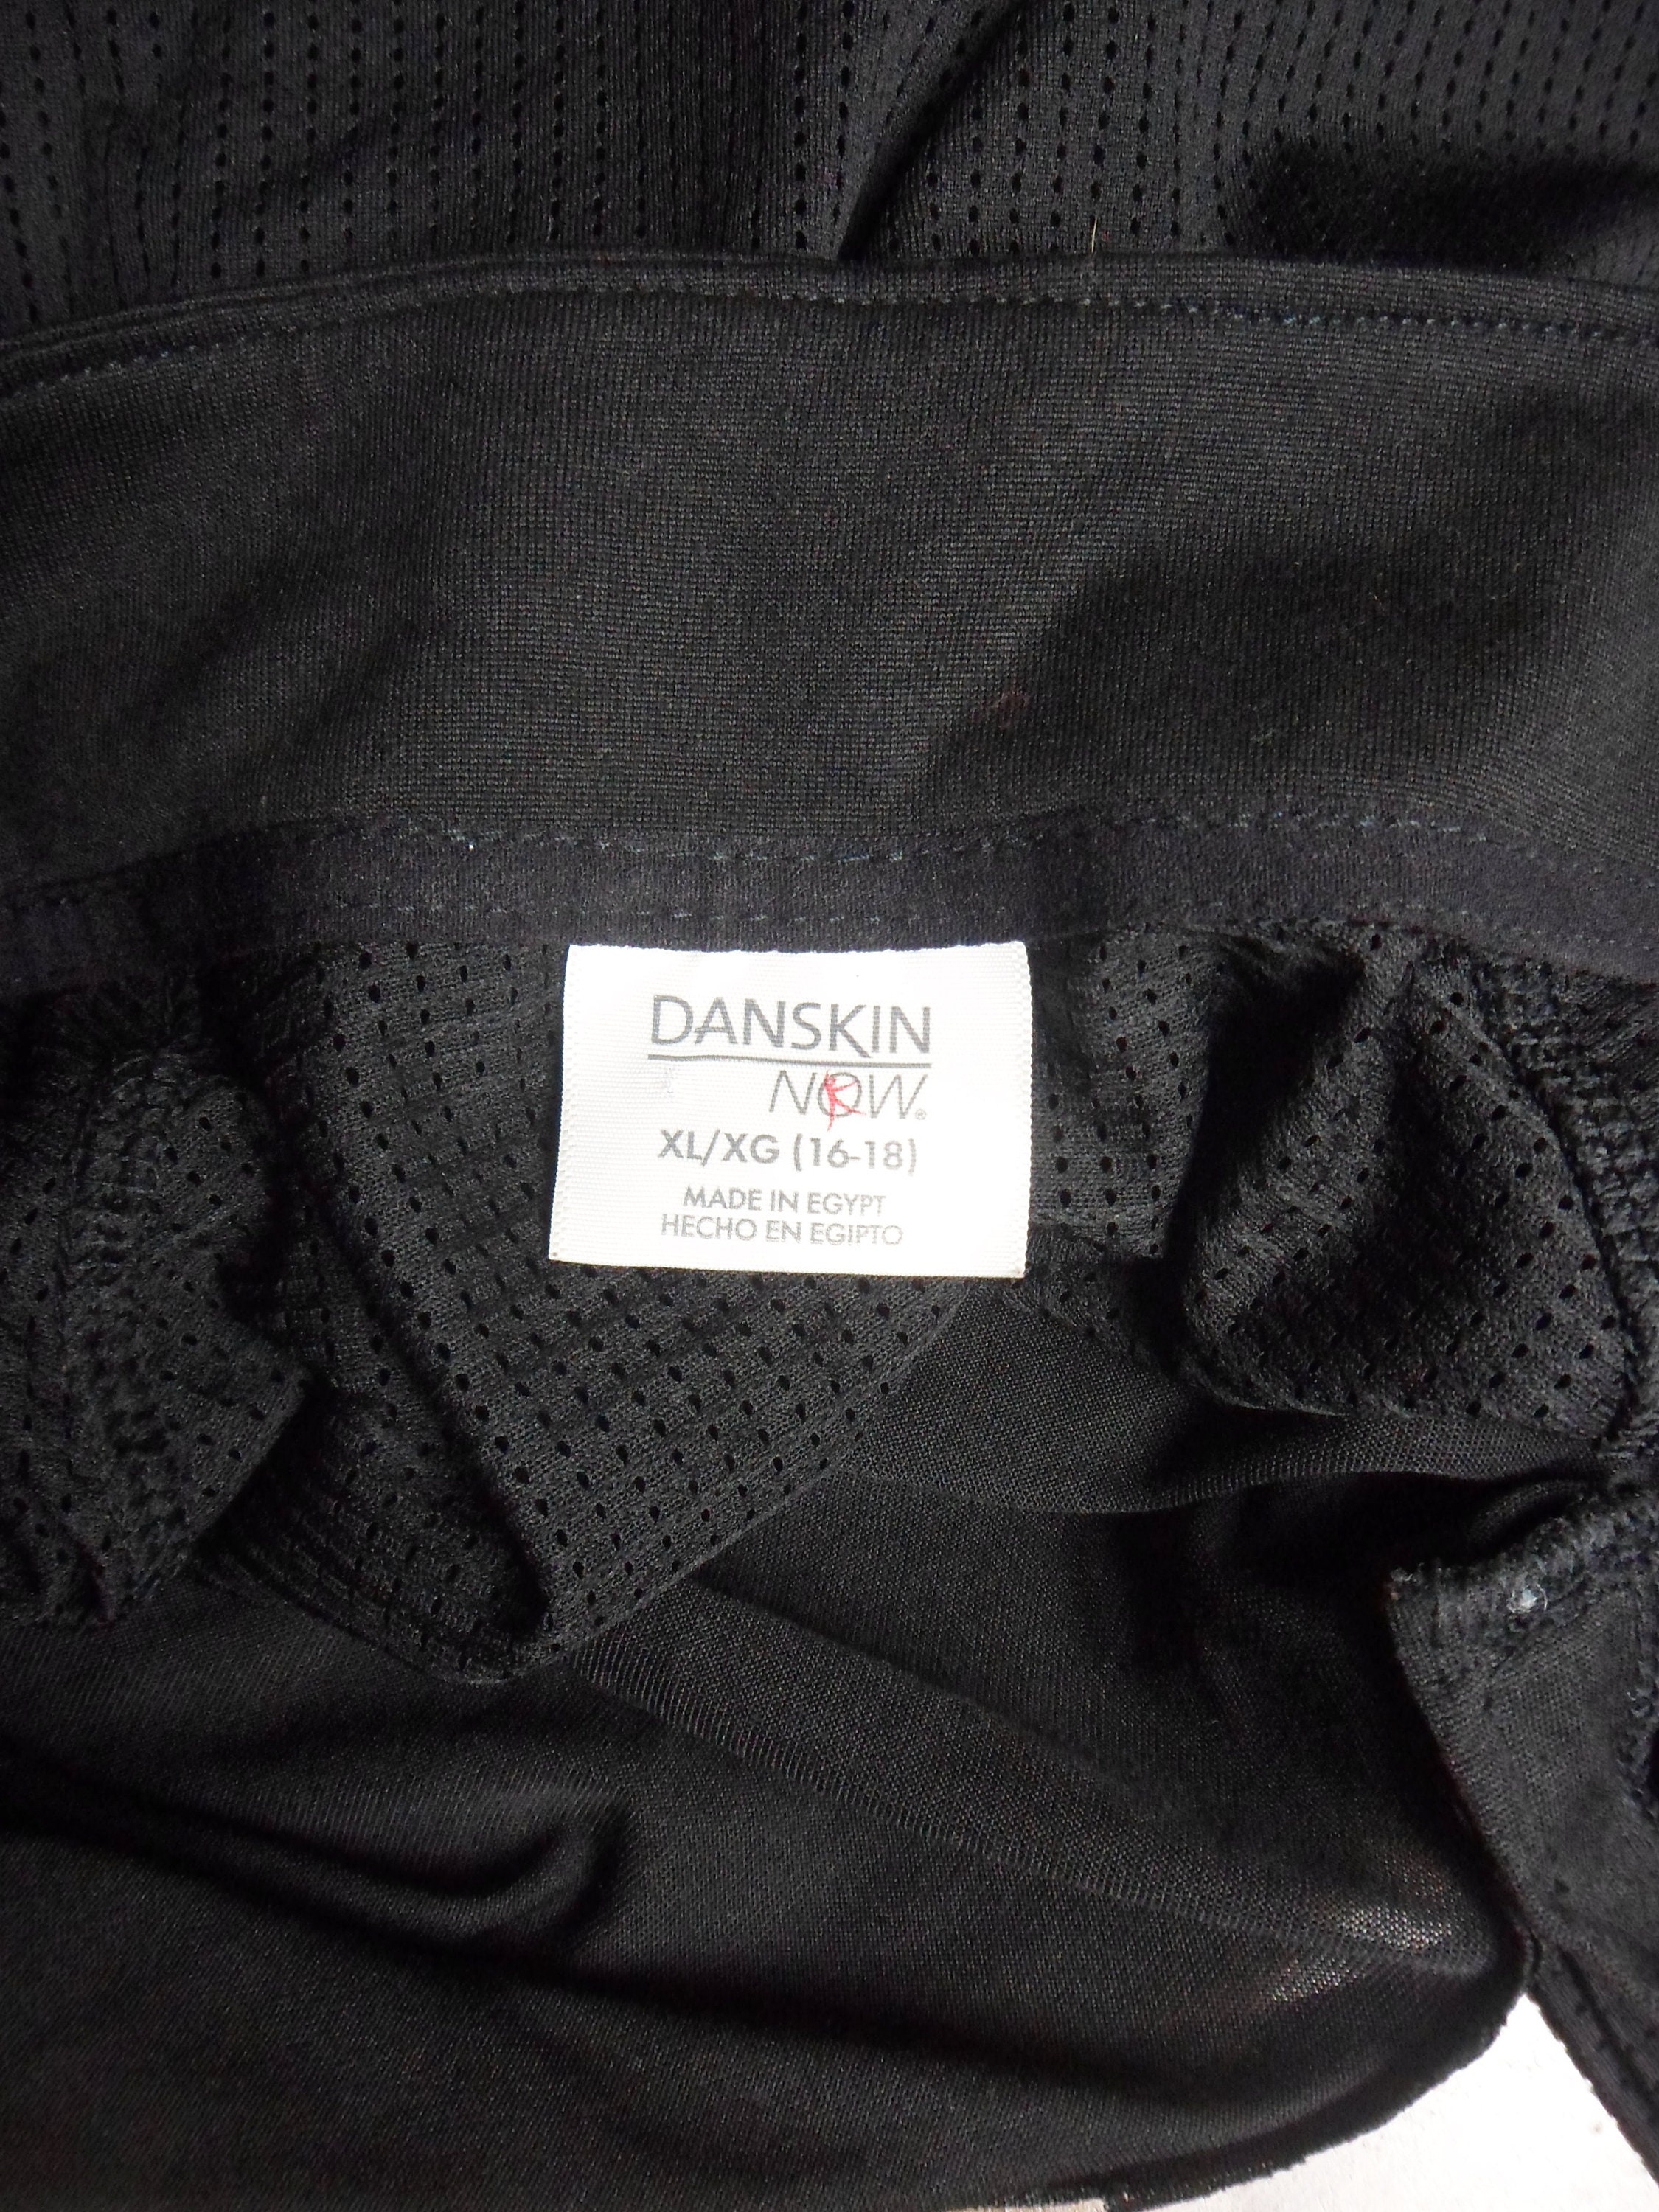 Danskin Now Black Exercise Jacket, Pull Over Half Zipper Workout Jacket,  Size XL, Vintage Dri More Jacket 